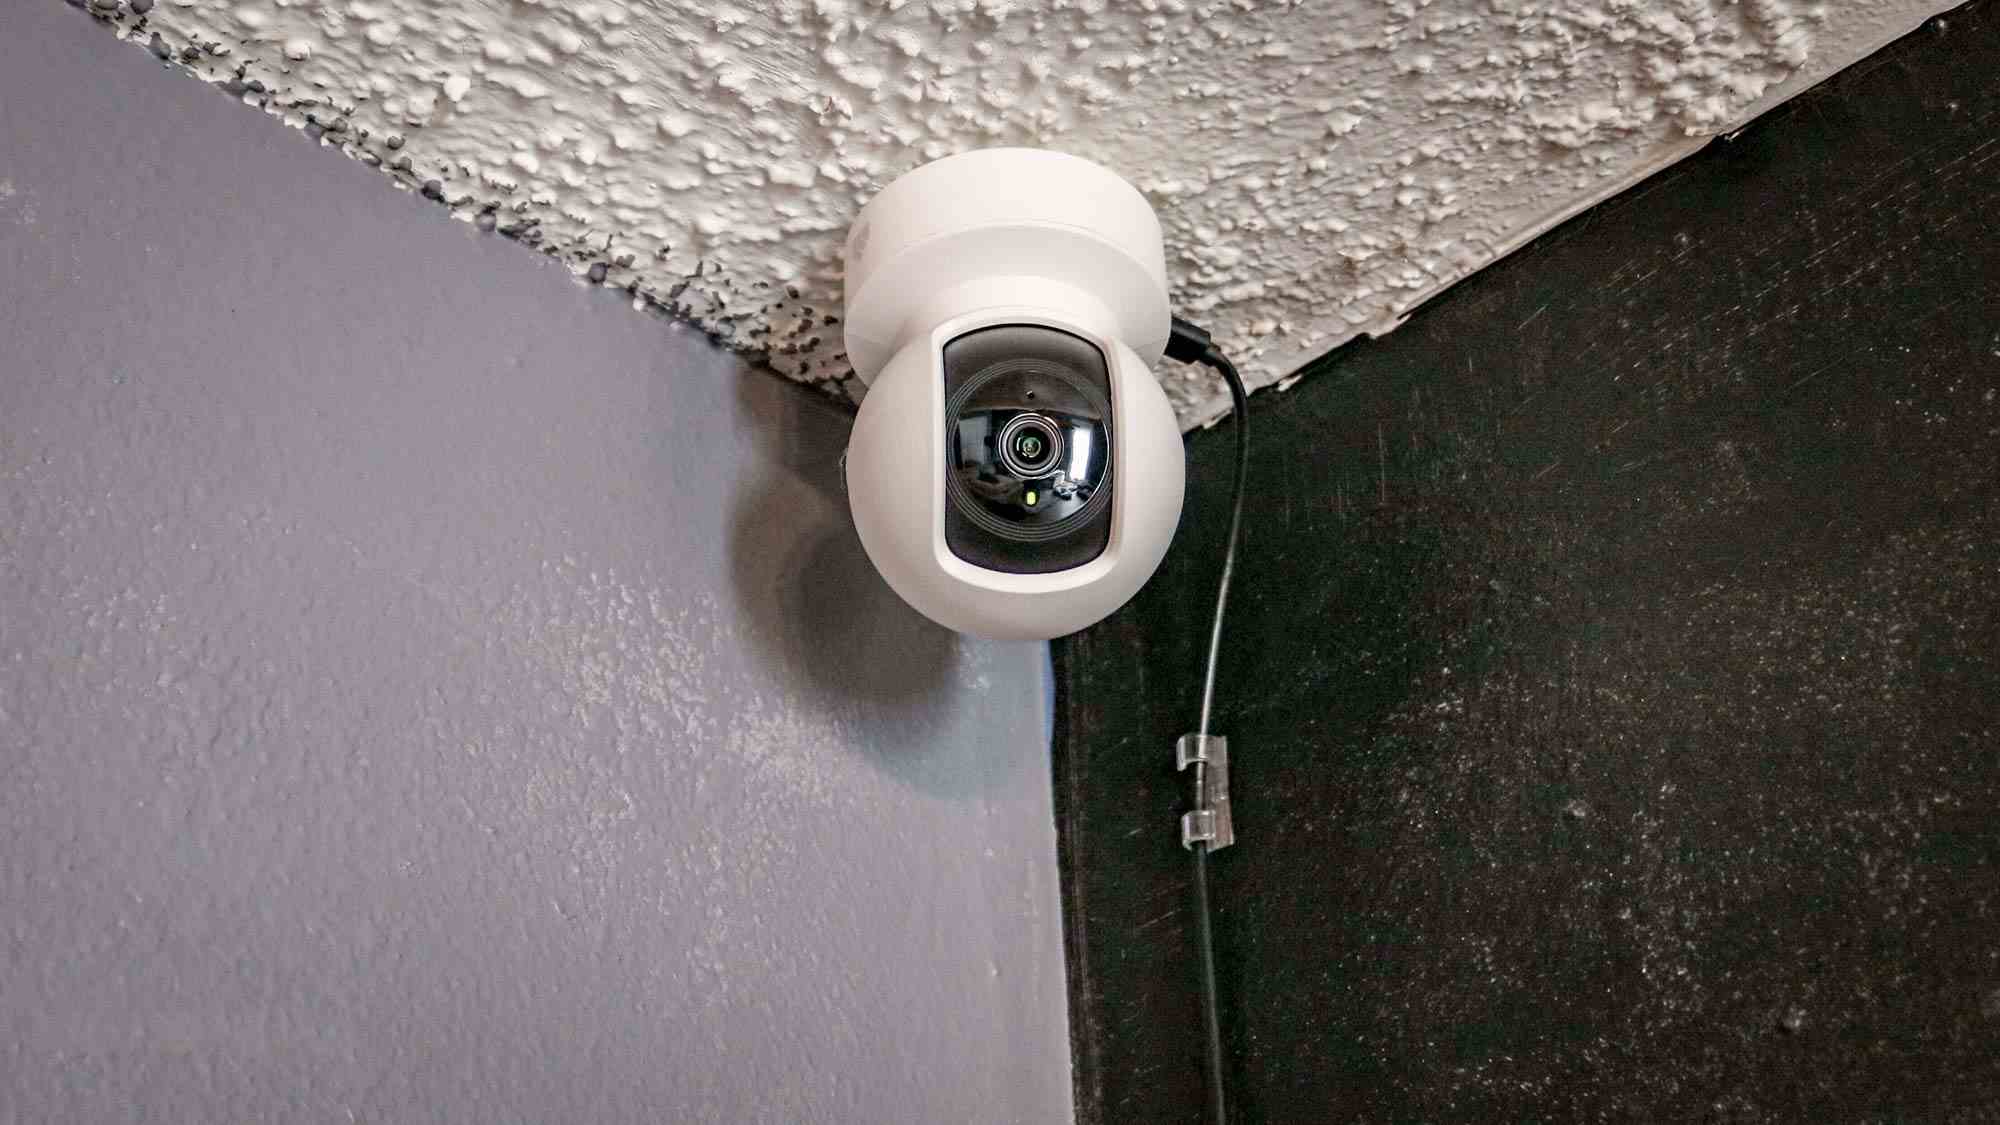 Tavana monte edilmiş bir TP-Link Kasa Spot Pan Tilt akıllı kamera